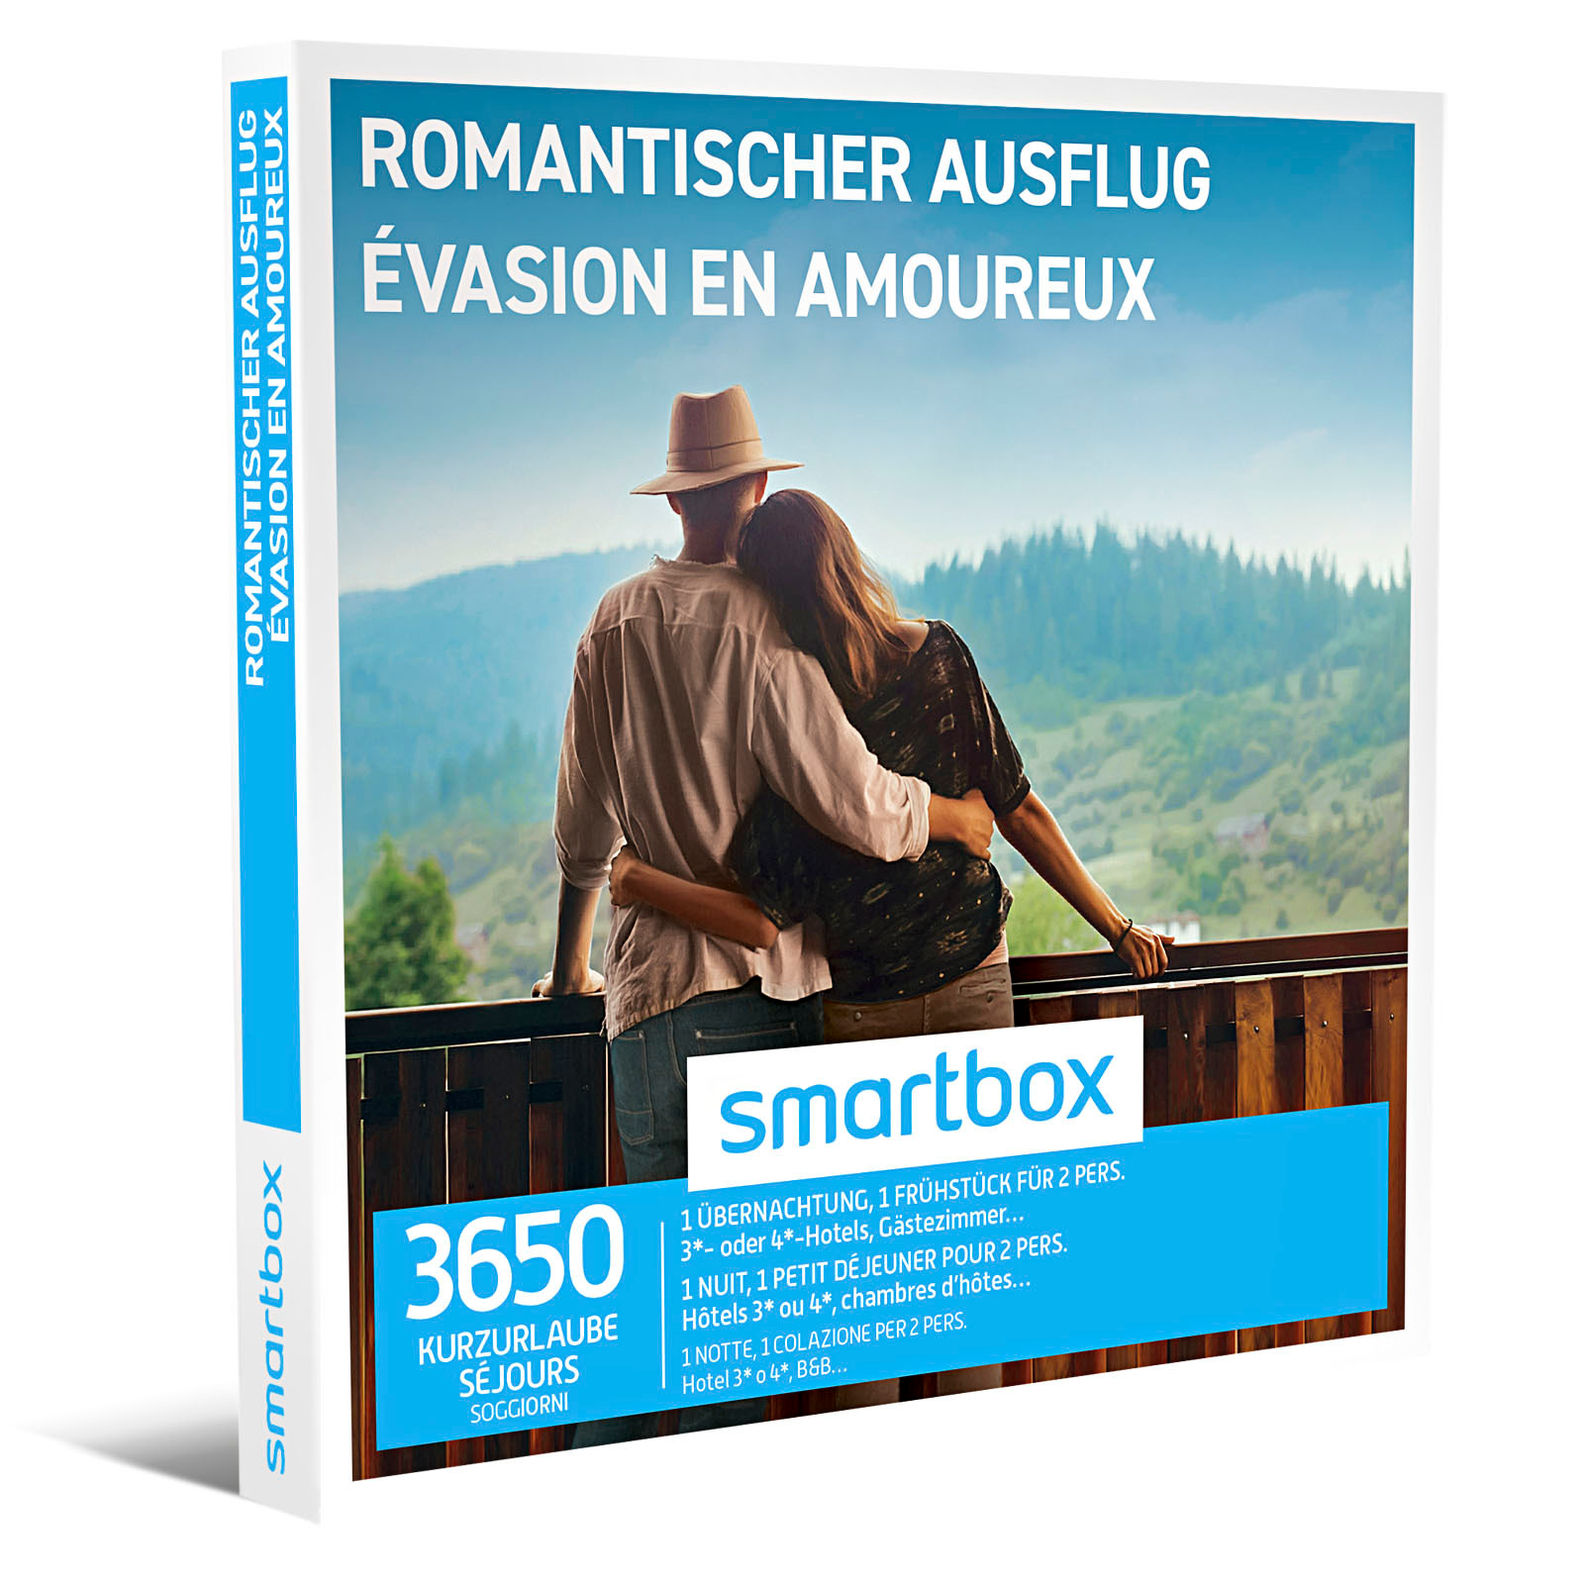 Smartbox ROMANTISCHER AUSFLUG EVASION EN AMOUREUX online kaufen - Orbisana